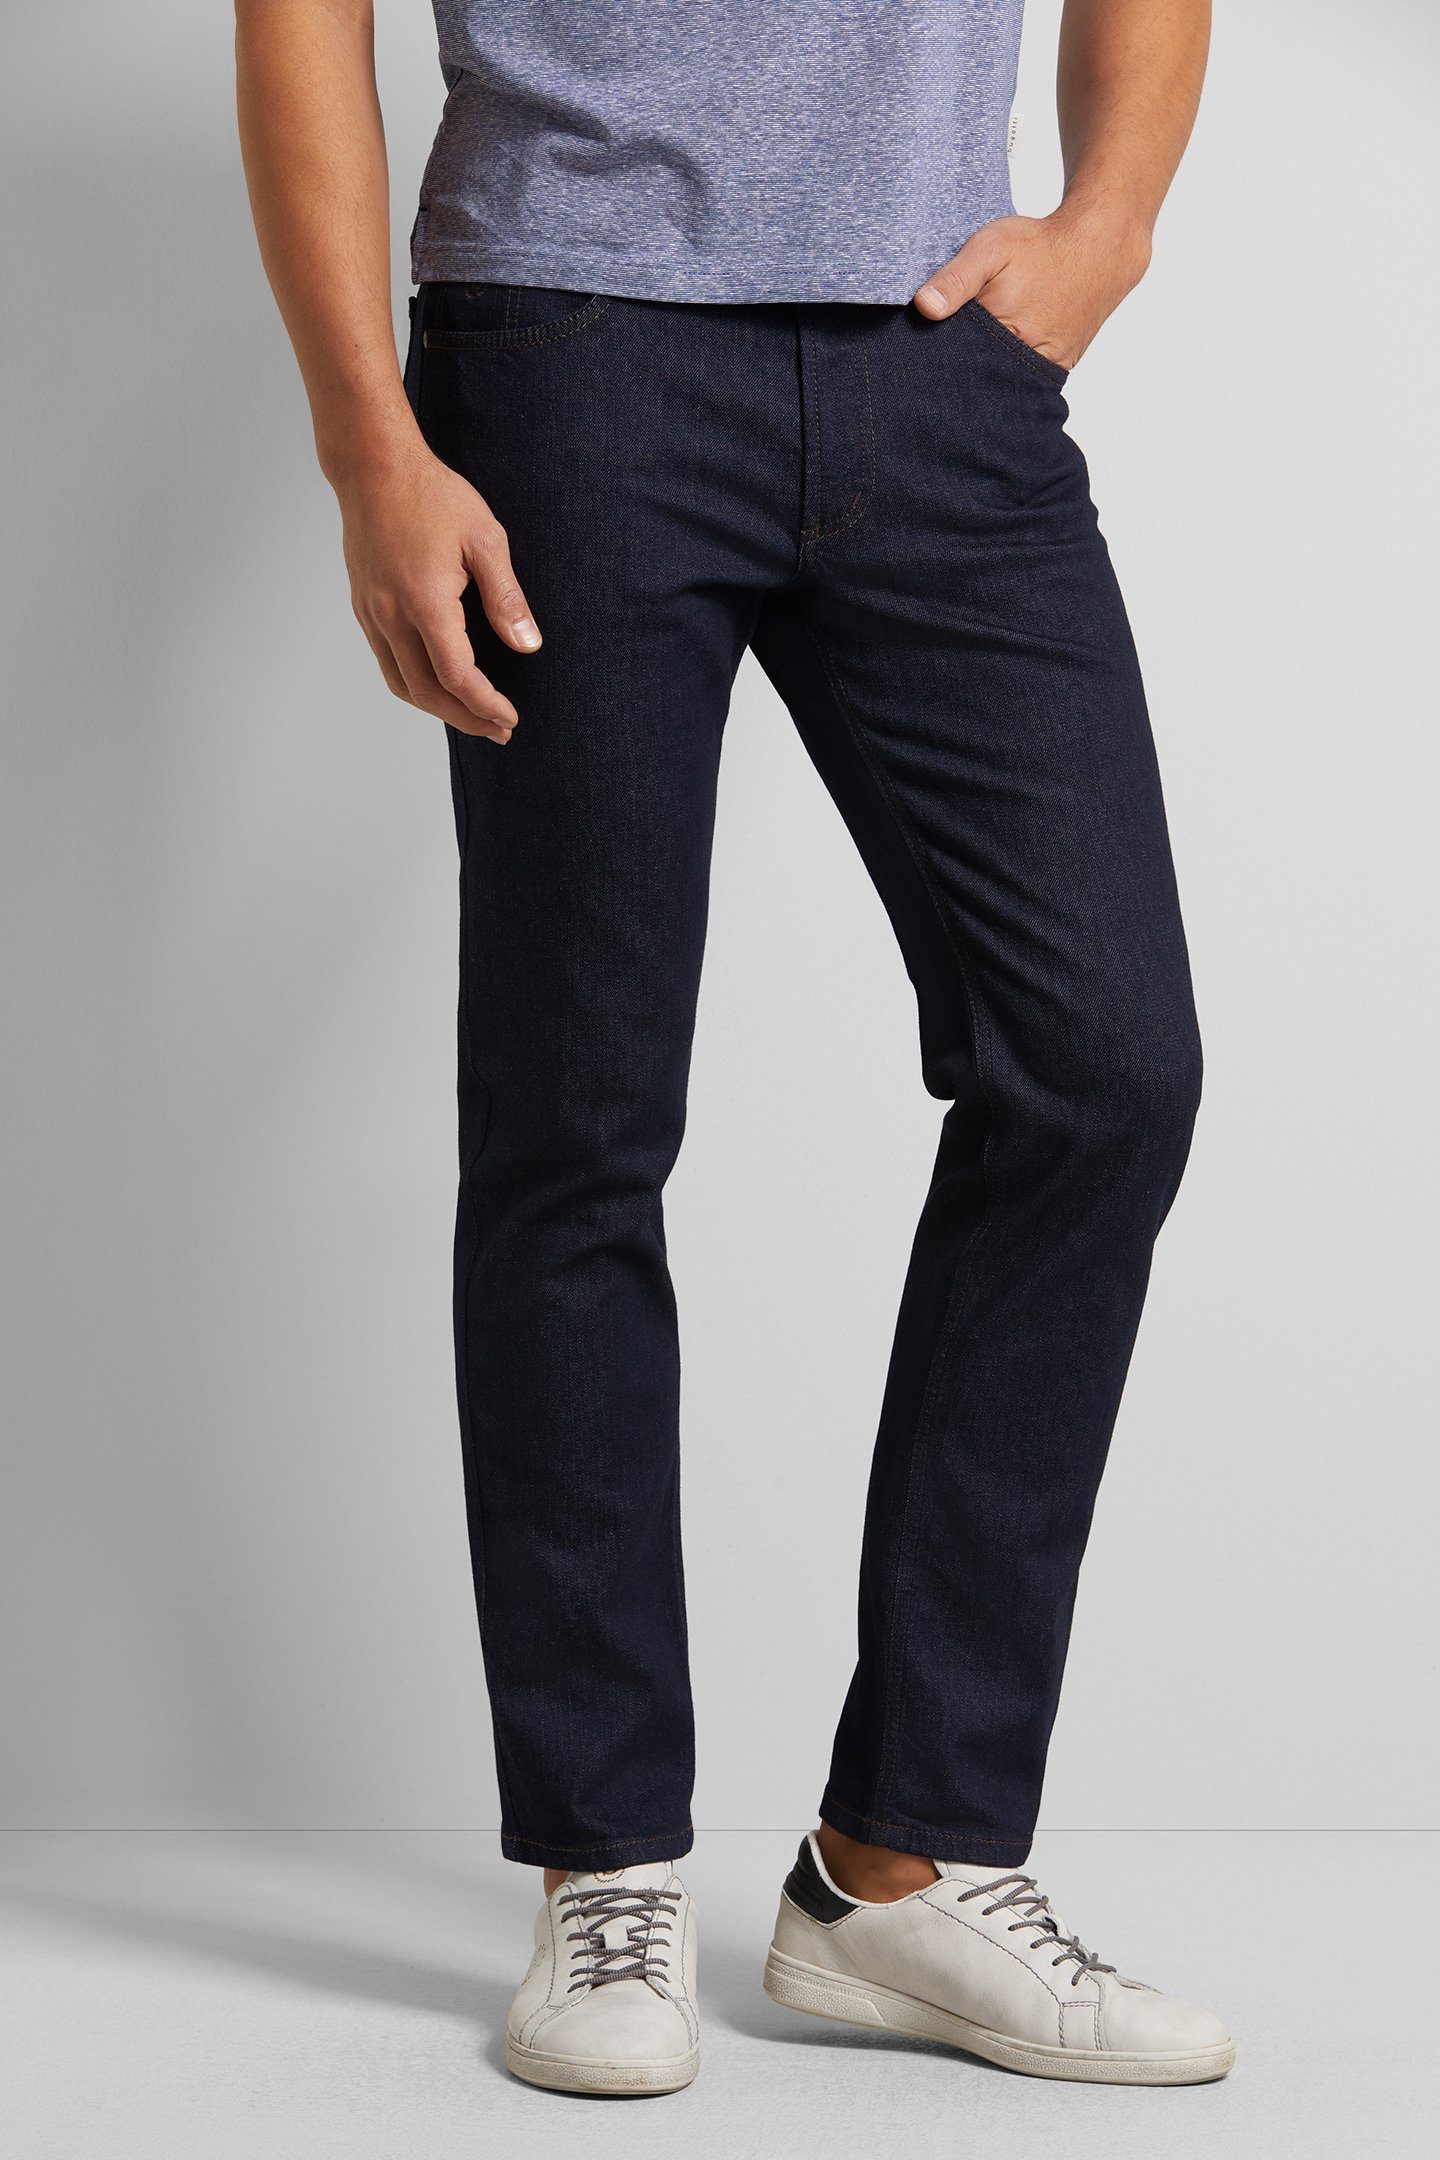 bugatti 5-Pocket-Jeans mit Comfort Stretch blau raw denim